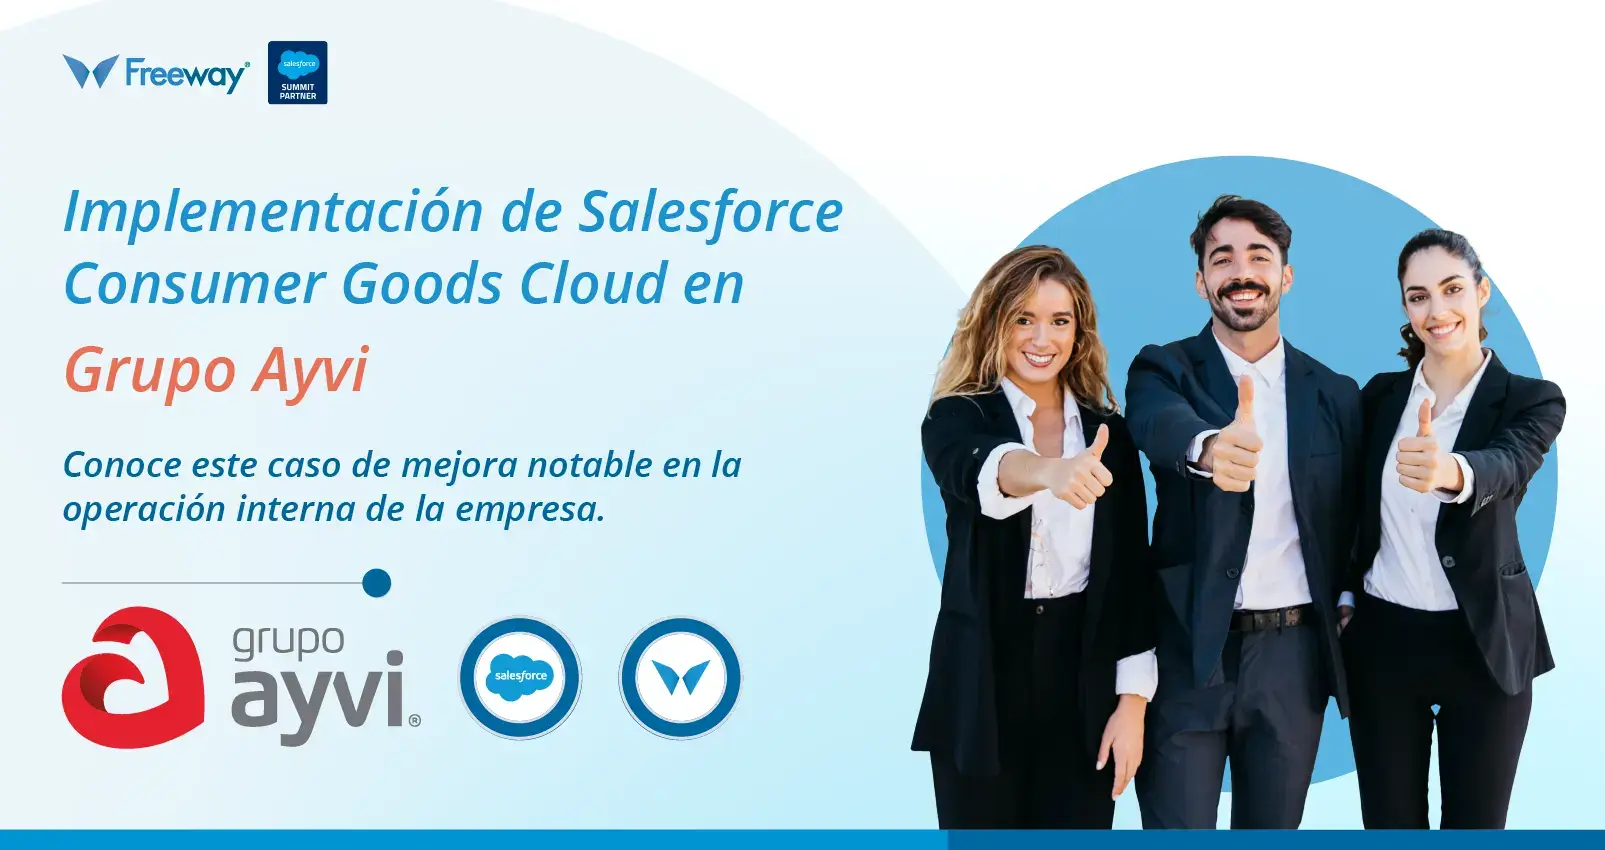 Implementación de Salesforce Consumer Goods Cloud en Grupo Ayvi. El caso de éxito incluyó una poderosa mejora en su operación interna.